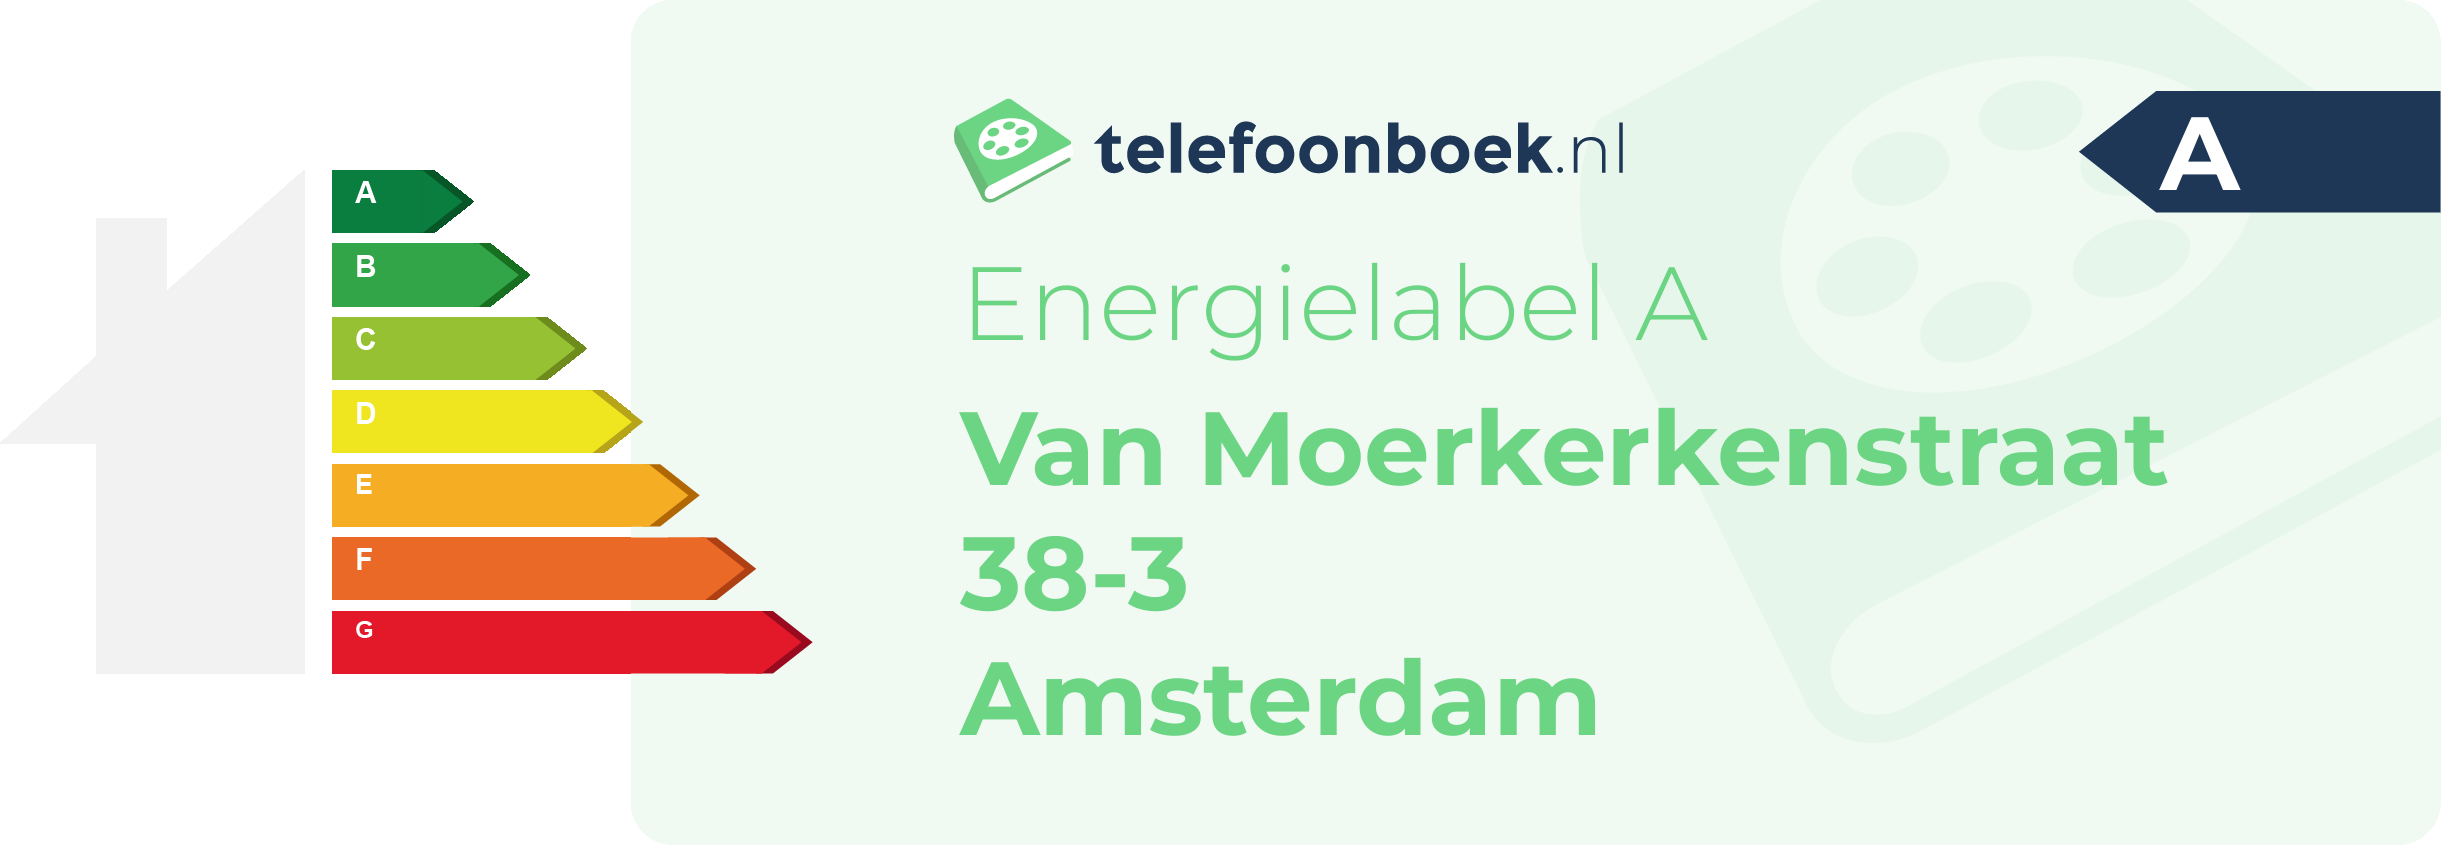 Energielabel Van Moerkerkenstraat 38-3 Amsterdam